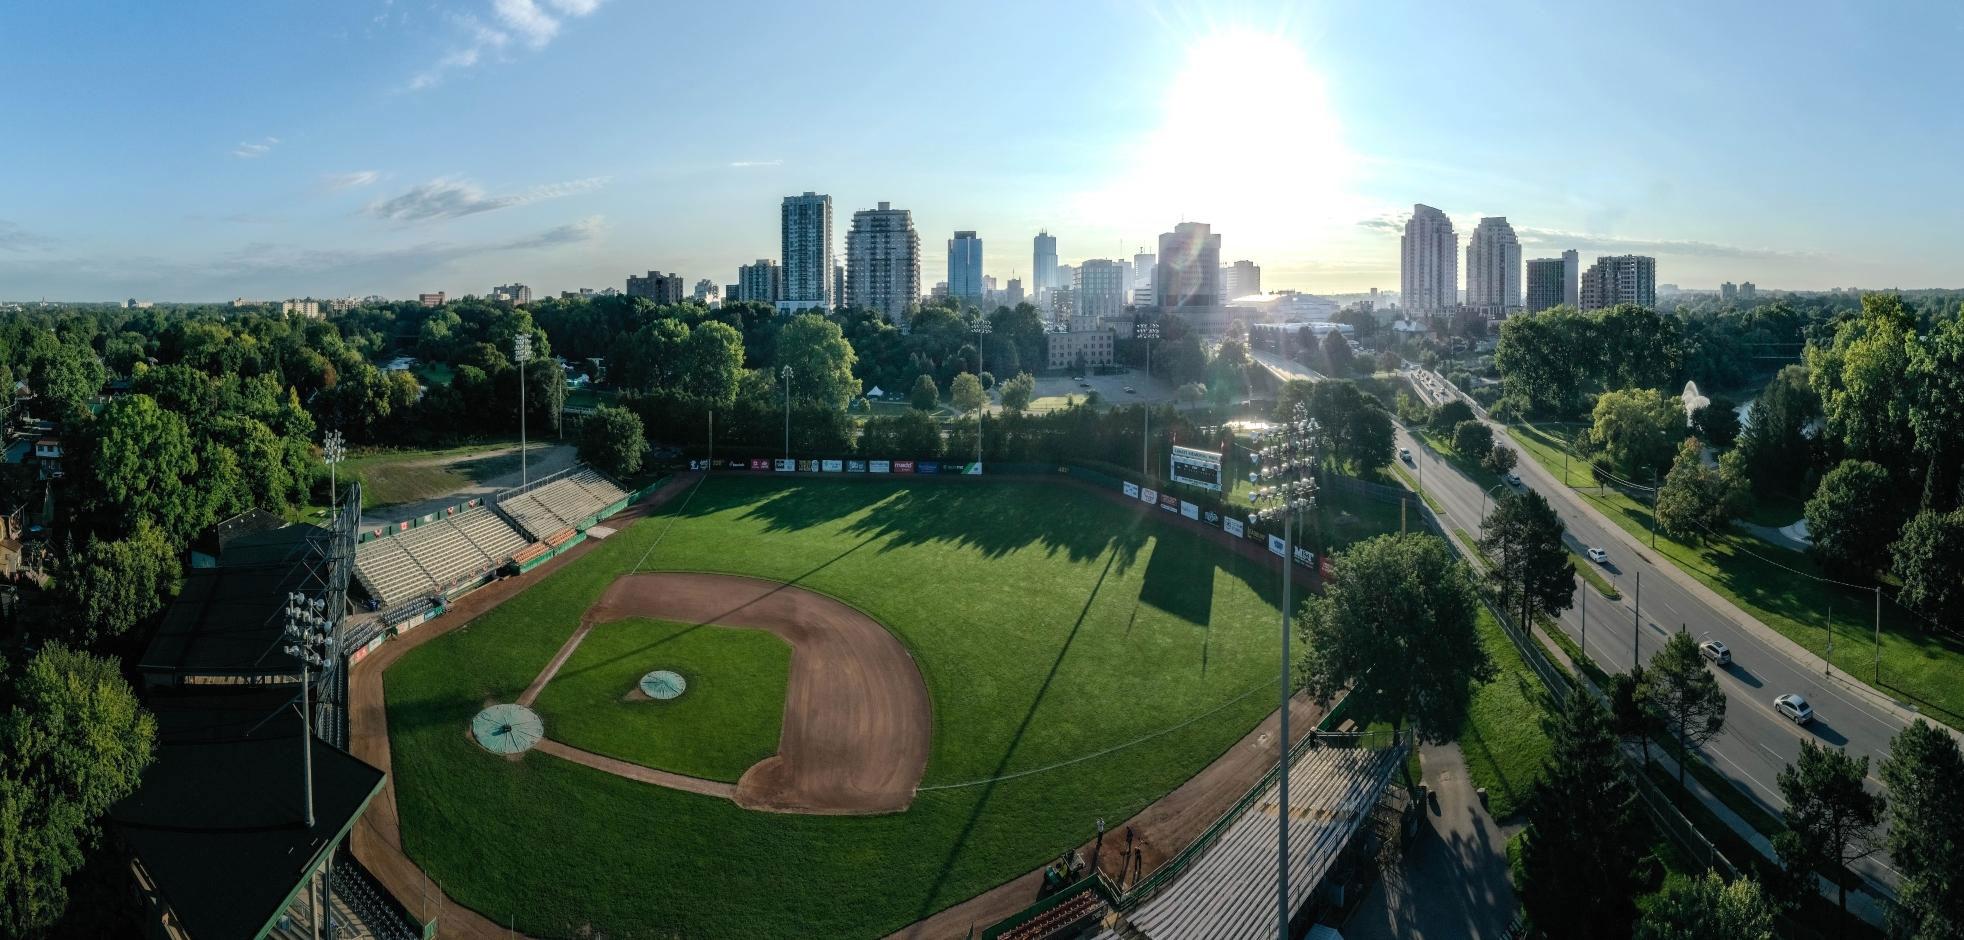 Aerial view of Labatt Memorial Park baseball grounds